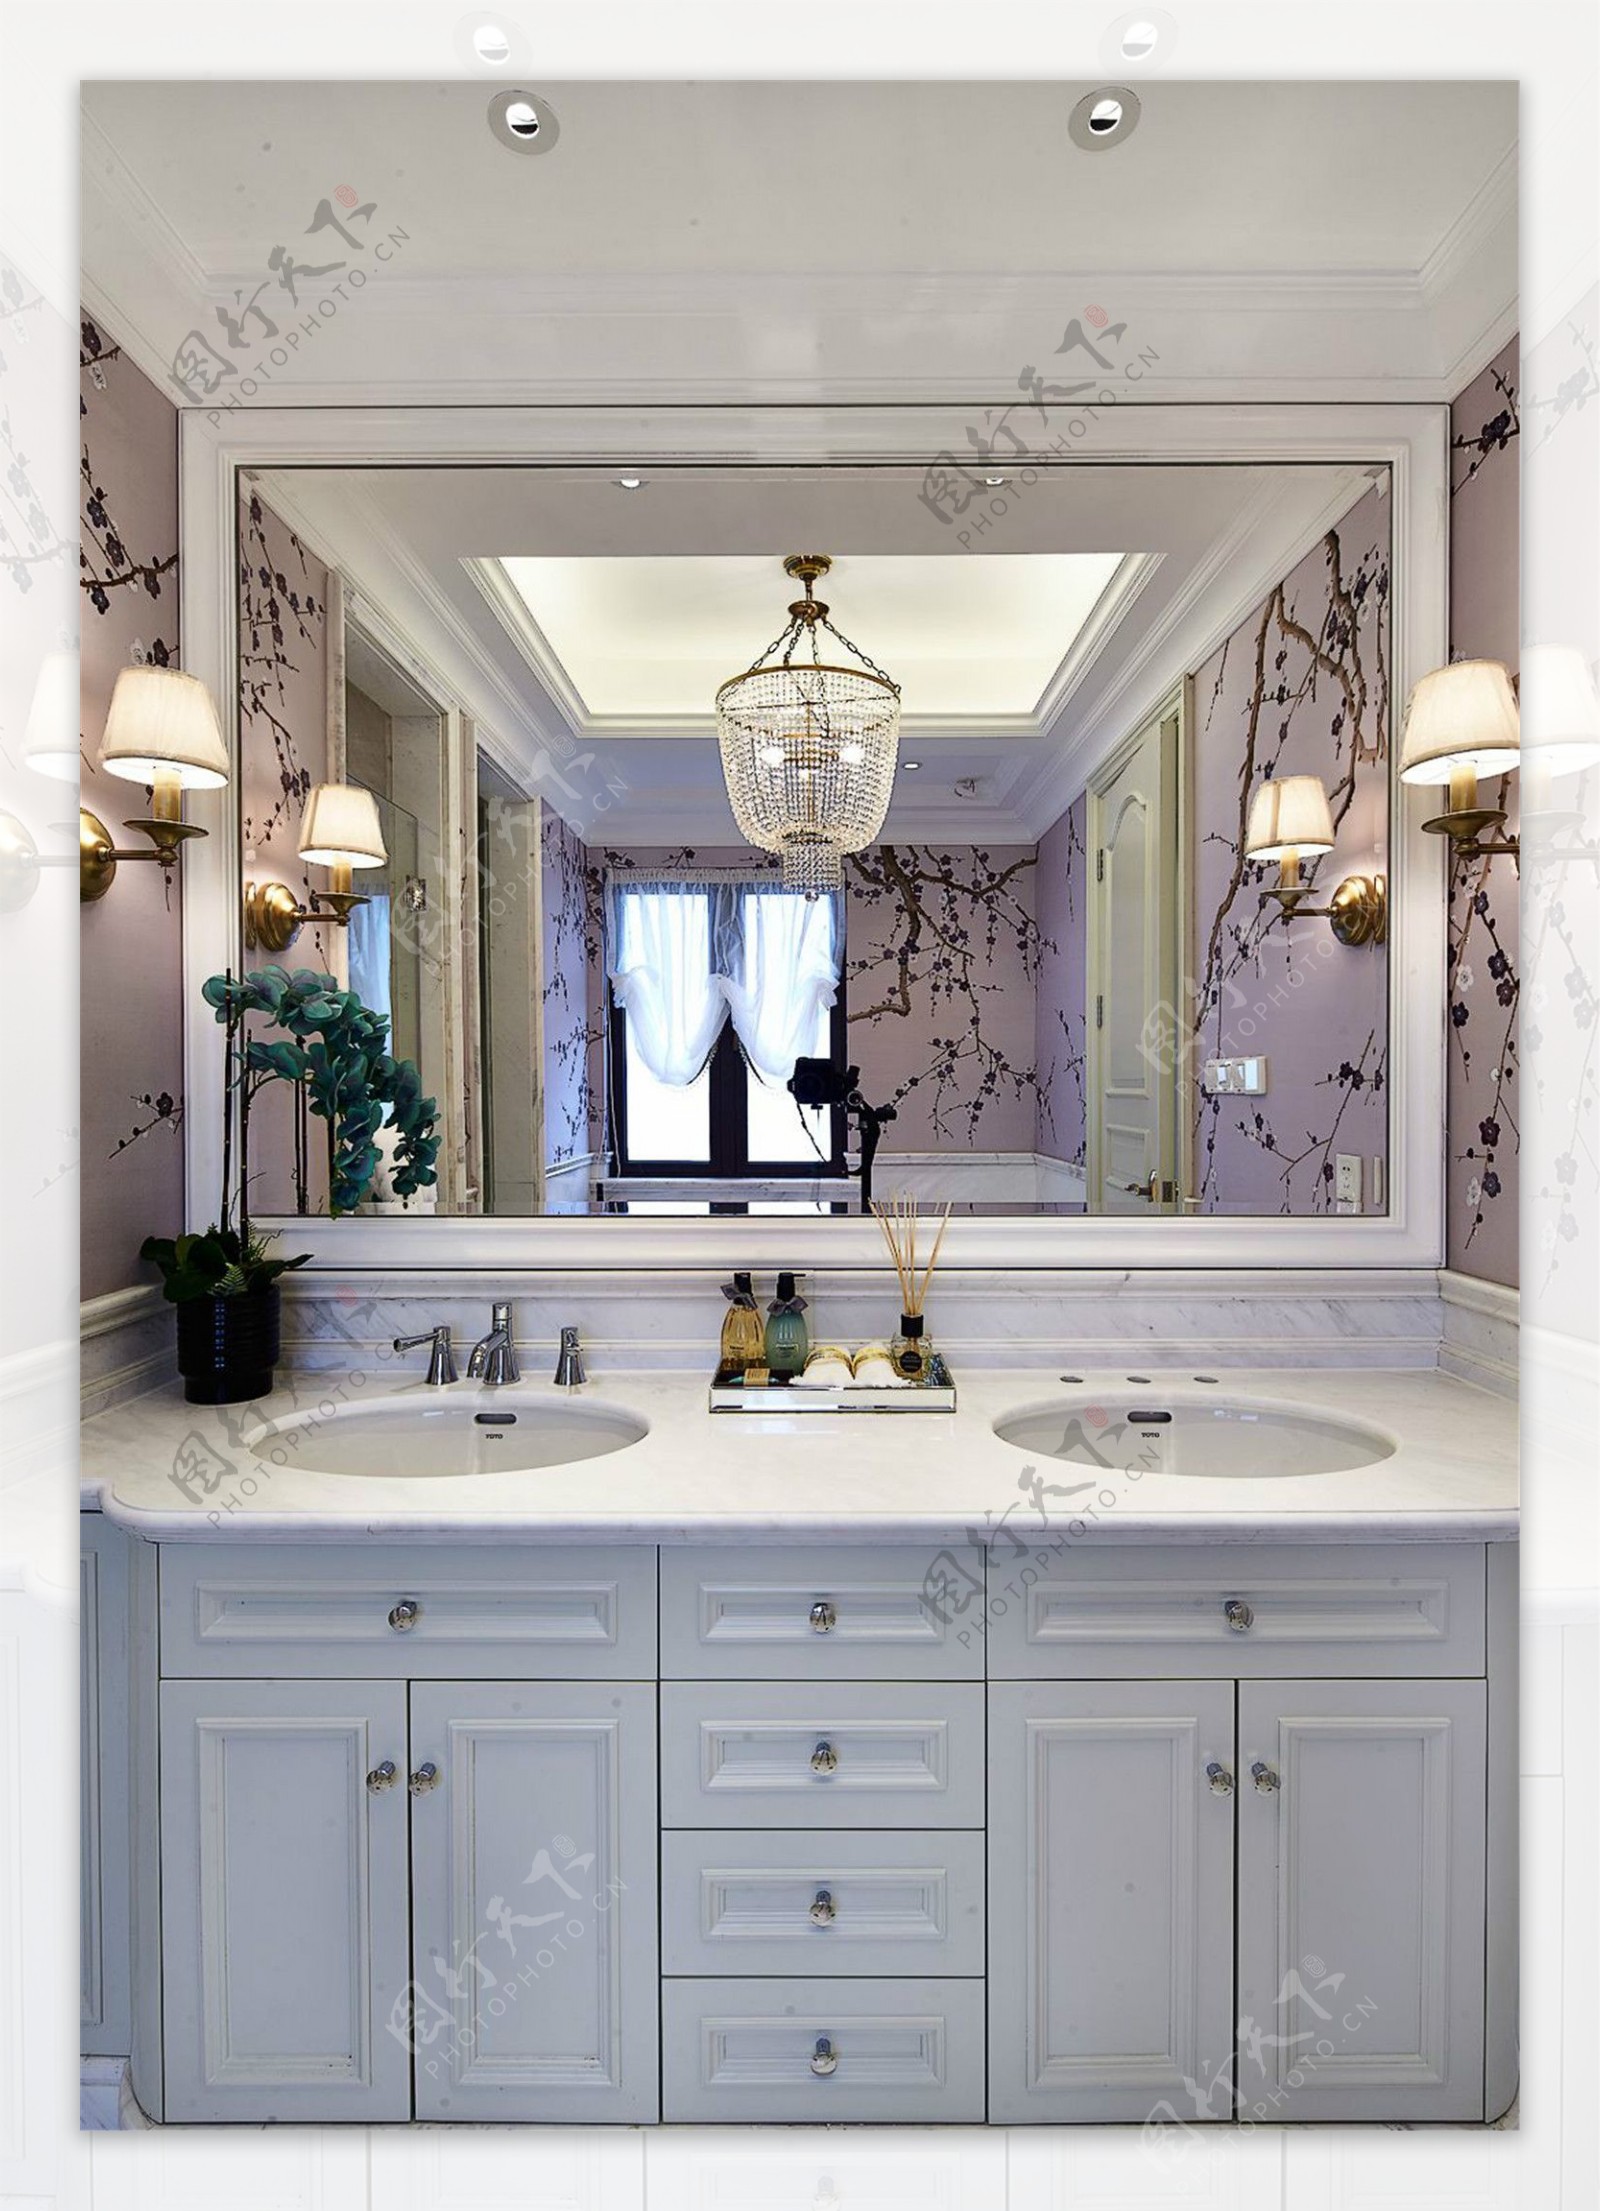 冷色浴室镜子古典效果图